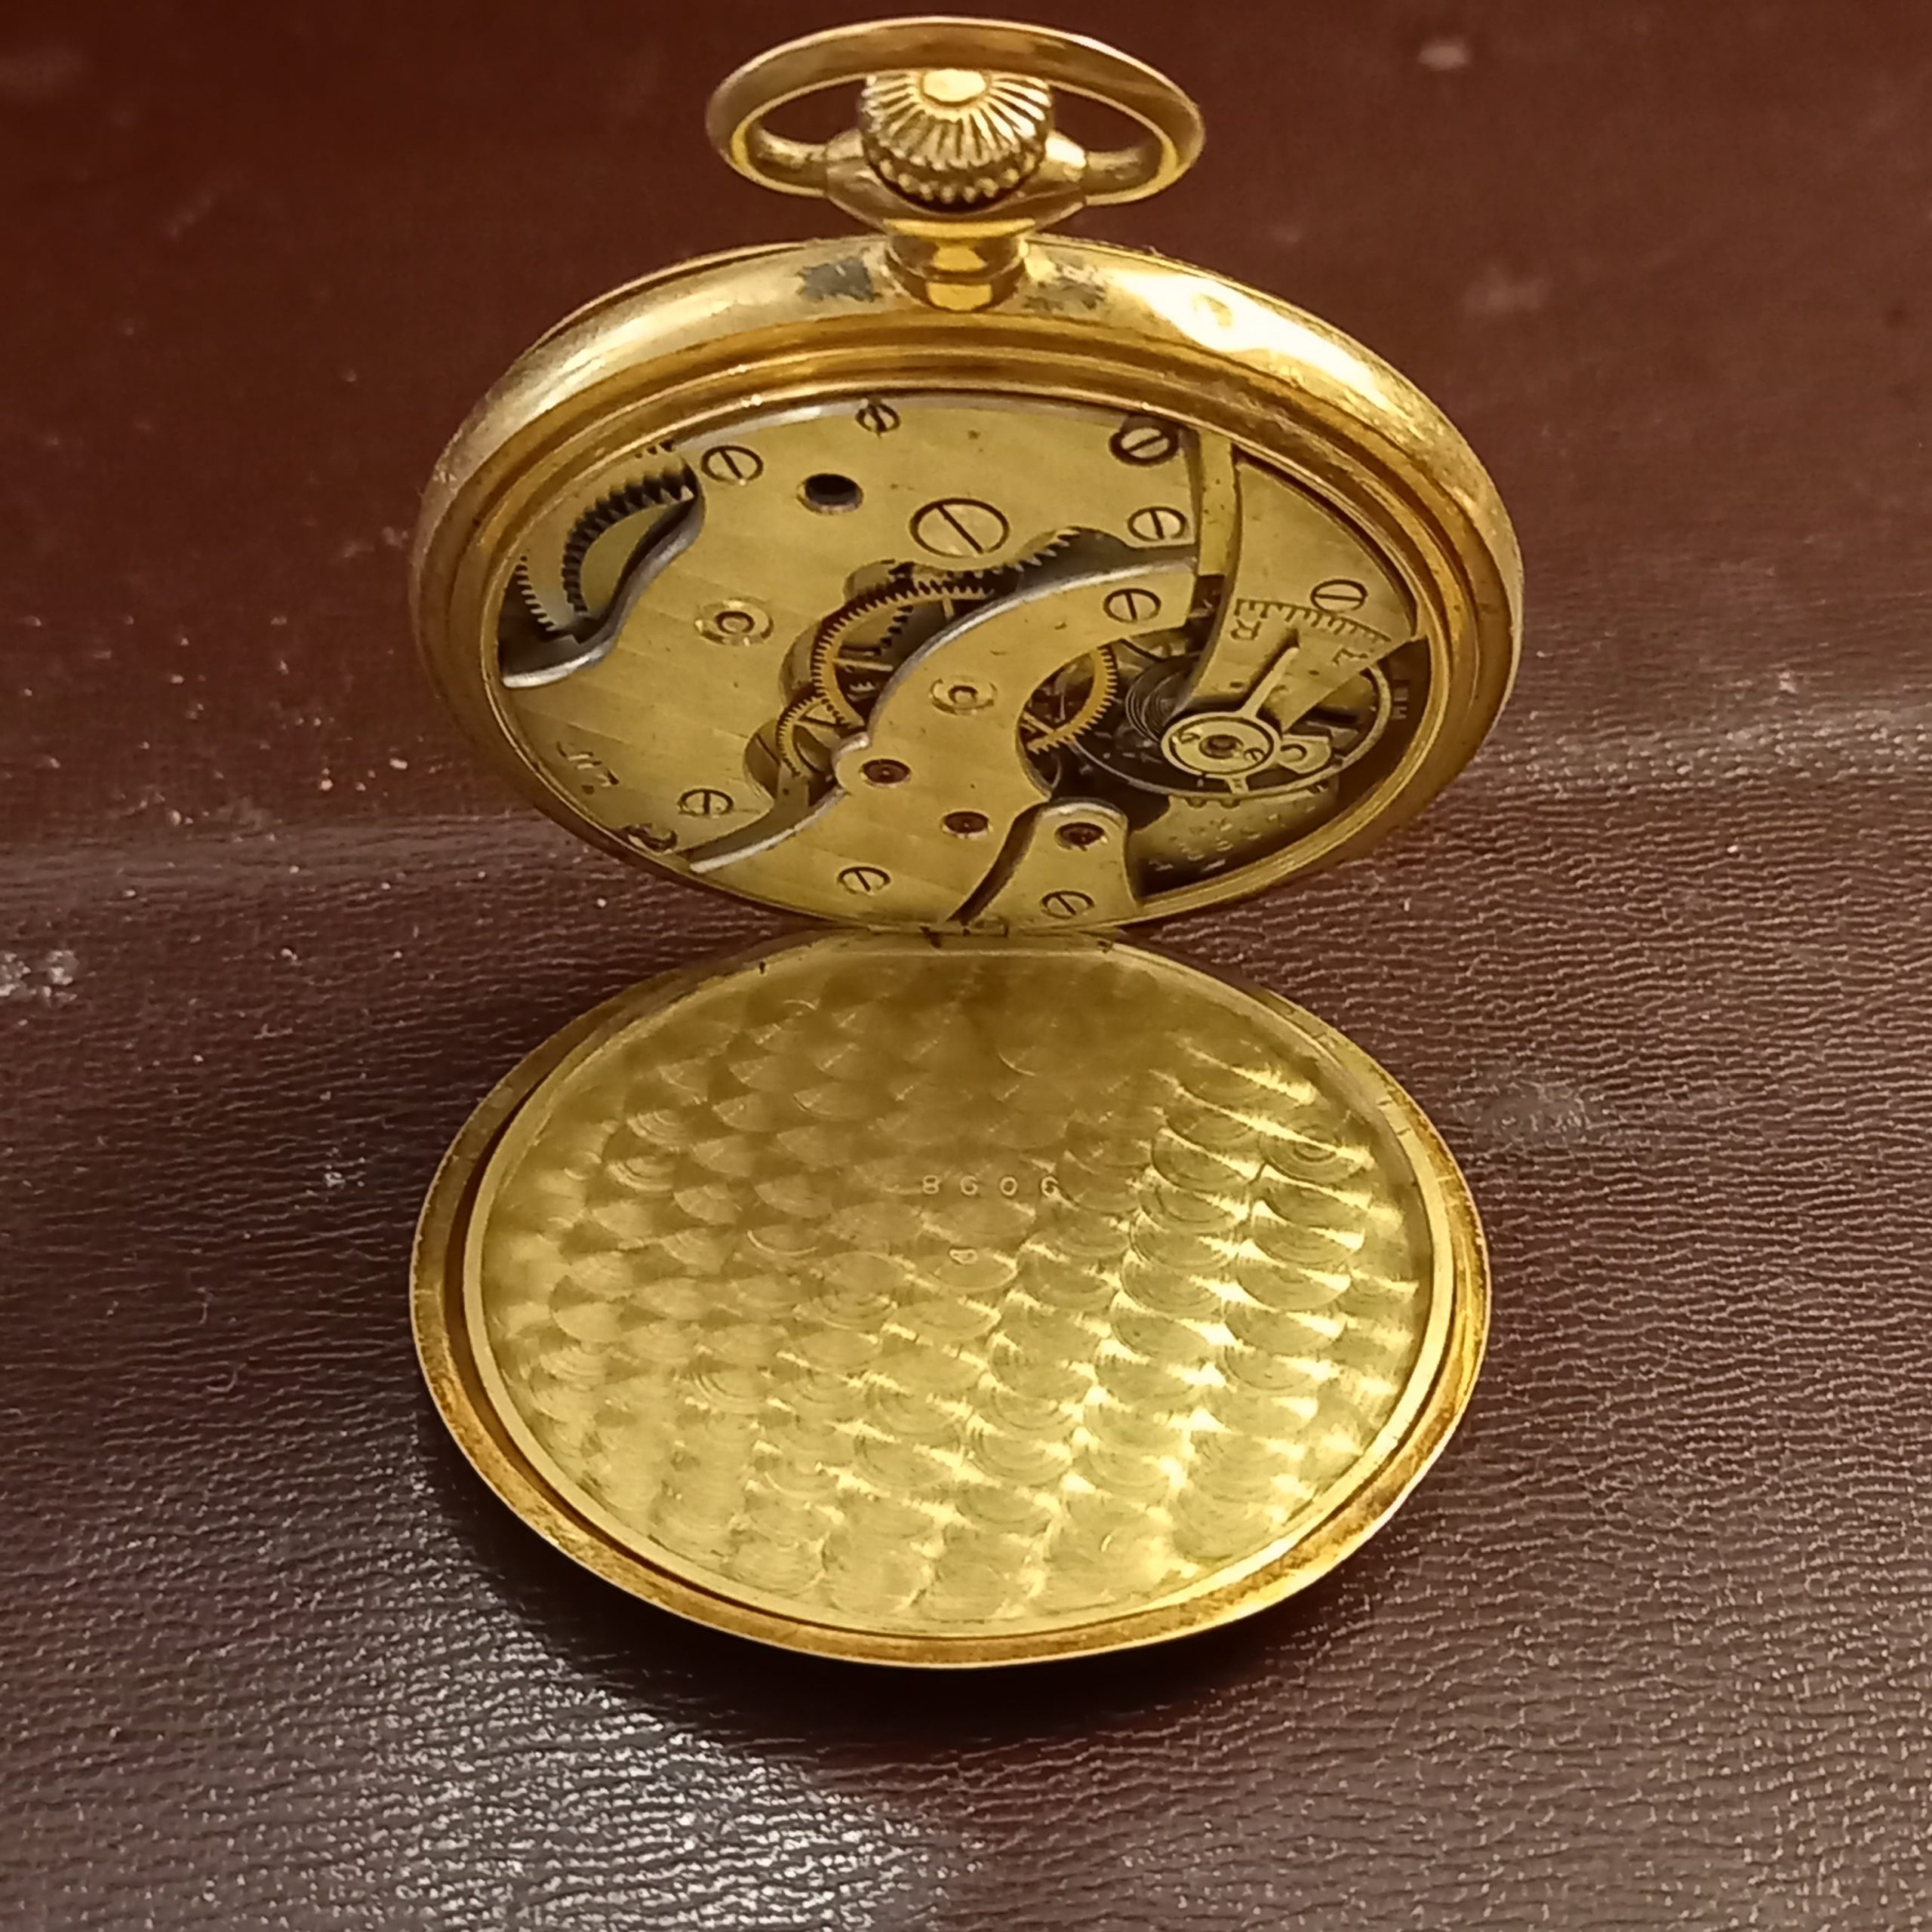 Montre Chronomètre LIP - Antic-Déco et La Marotte d'Amélie